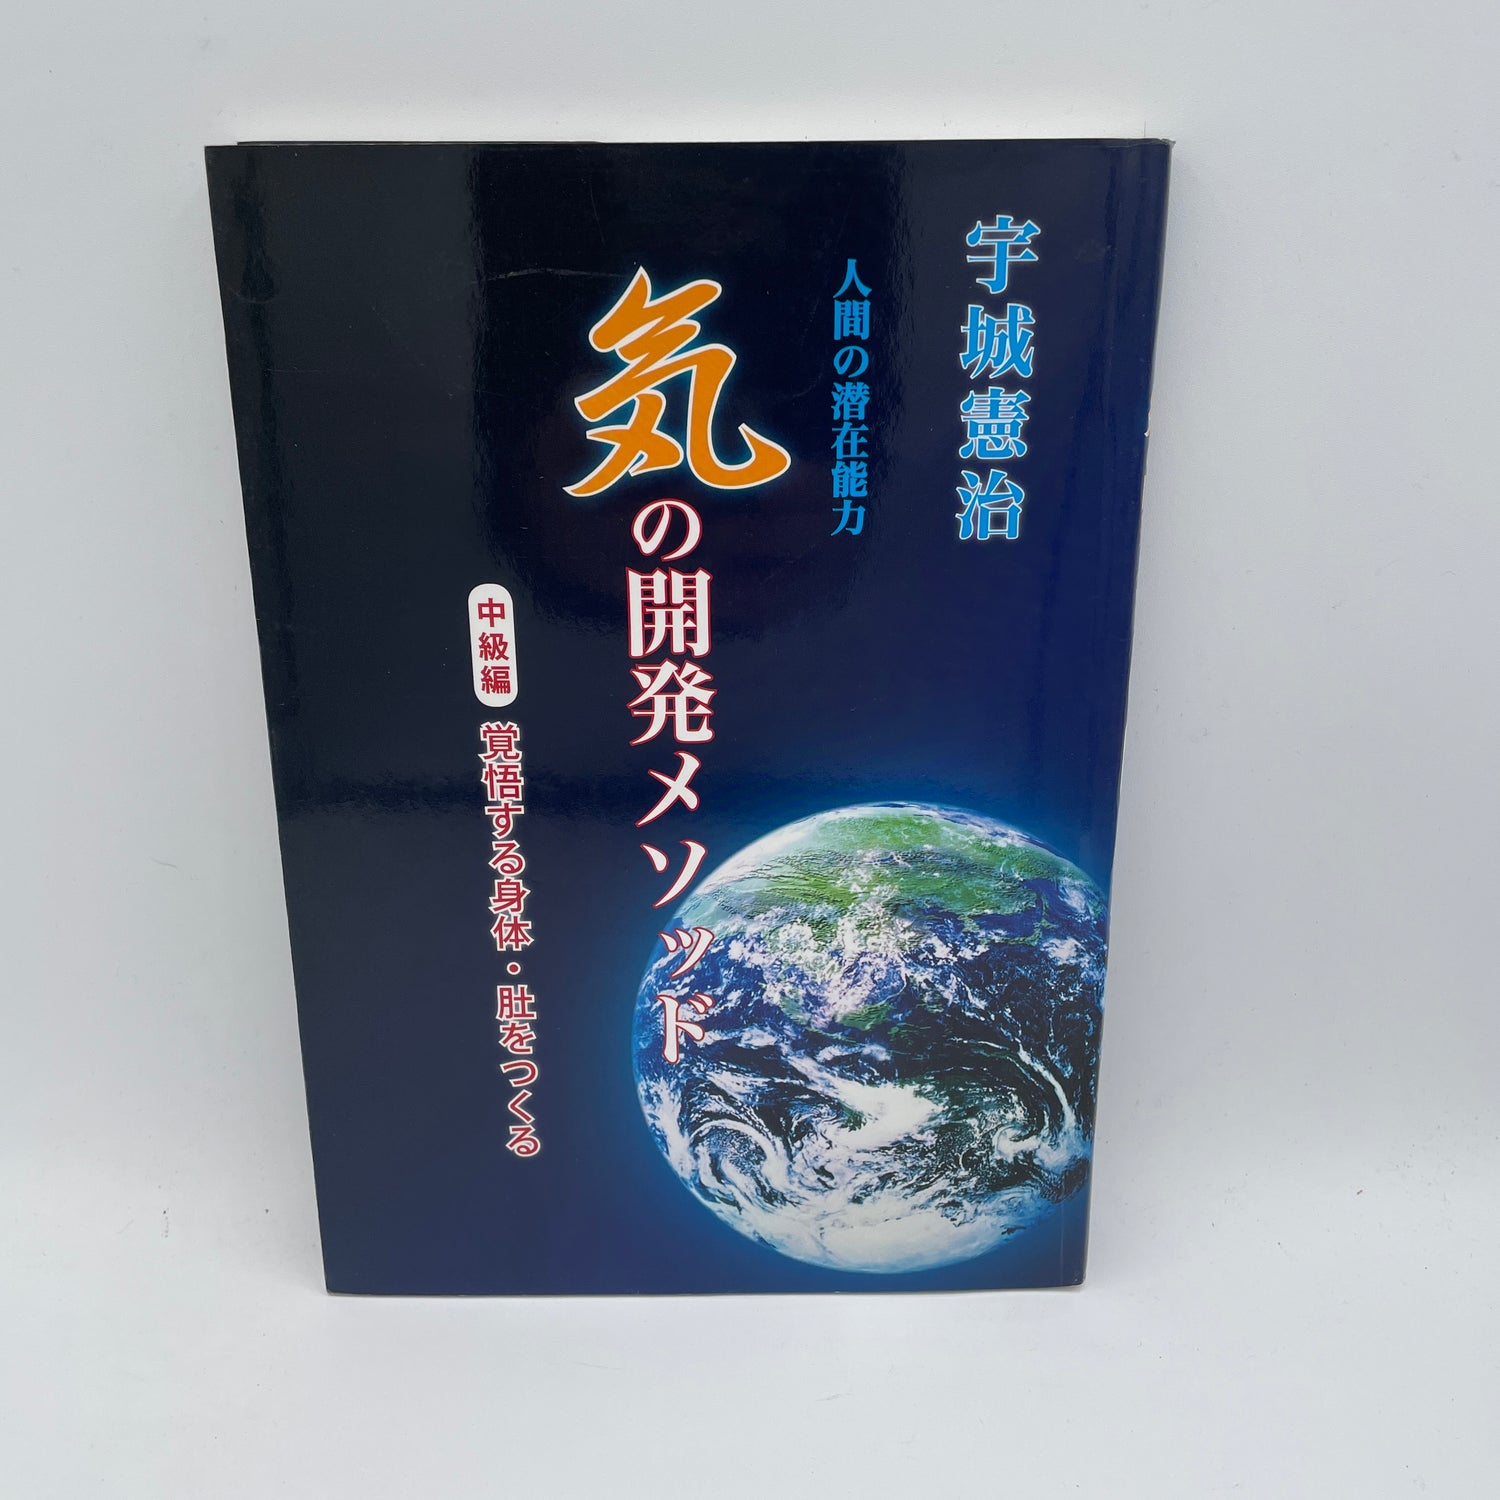 Libro de métodos de desarrollo Ki (intermedio) de Kenji Ushiro (usado)